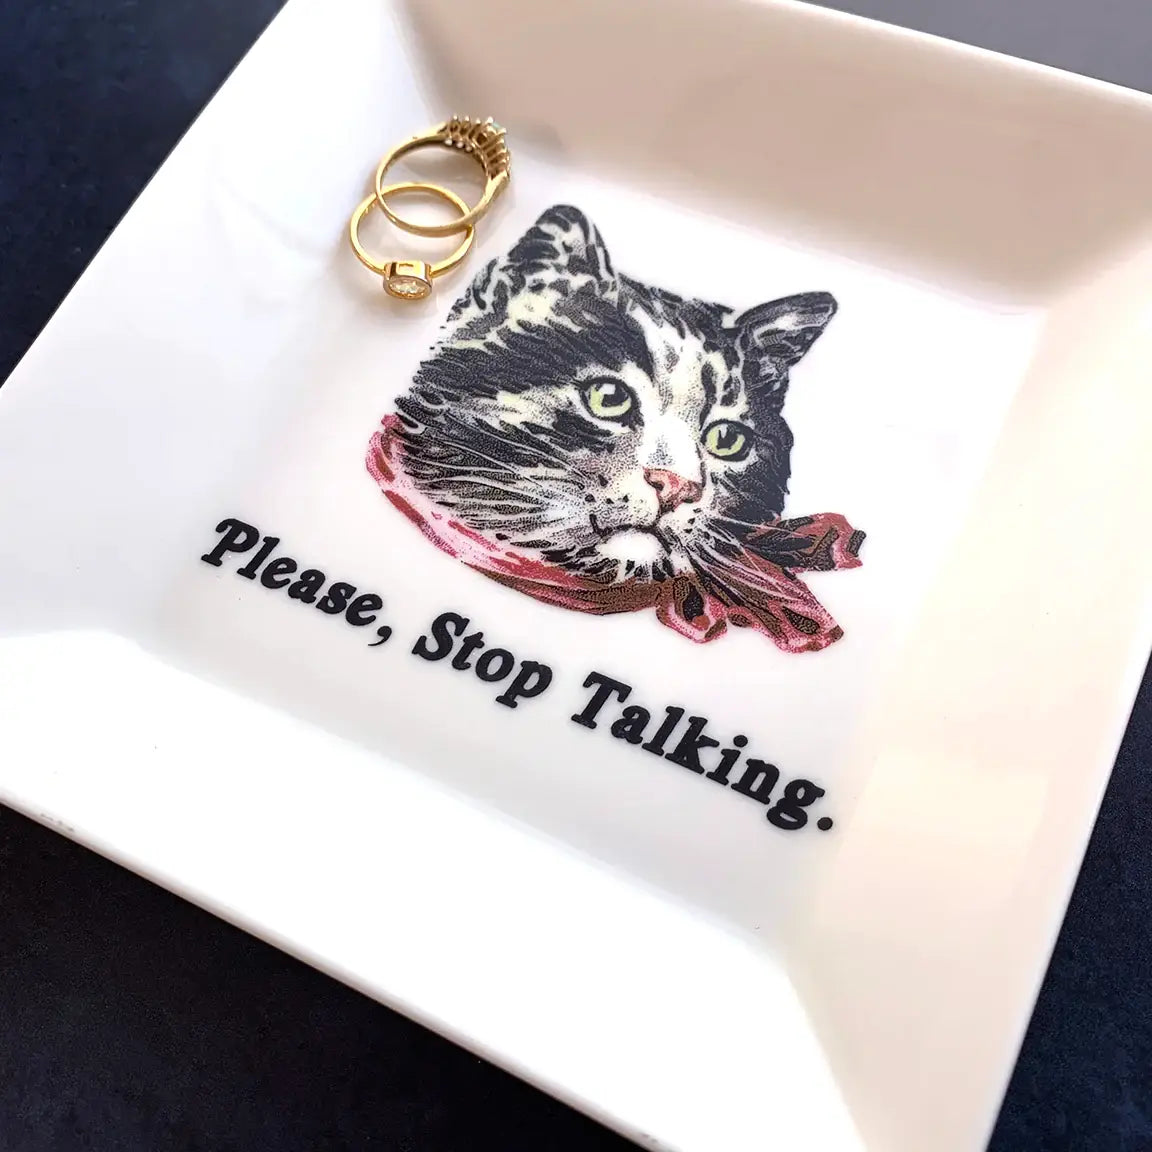 CAT TRINKET TRAY - "PLEASE, STOP TALKING"